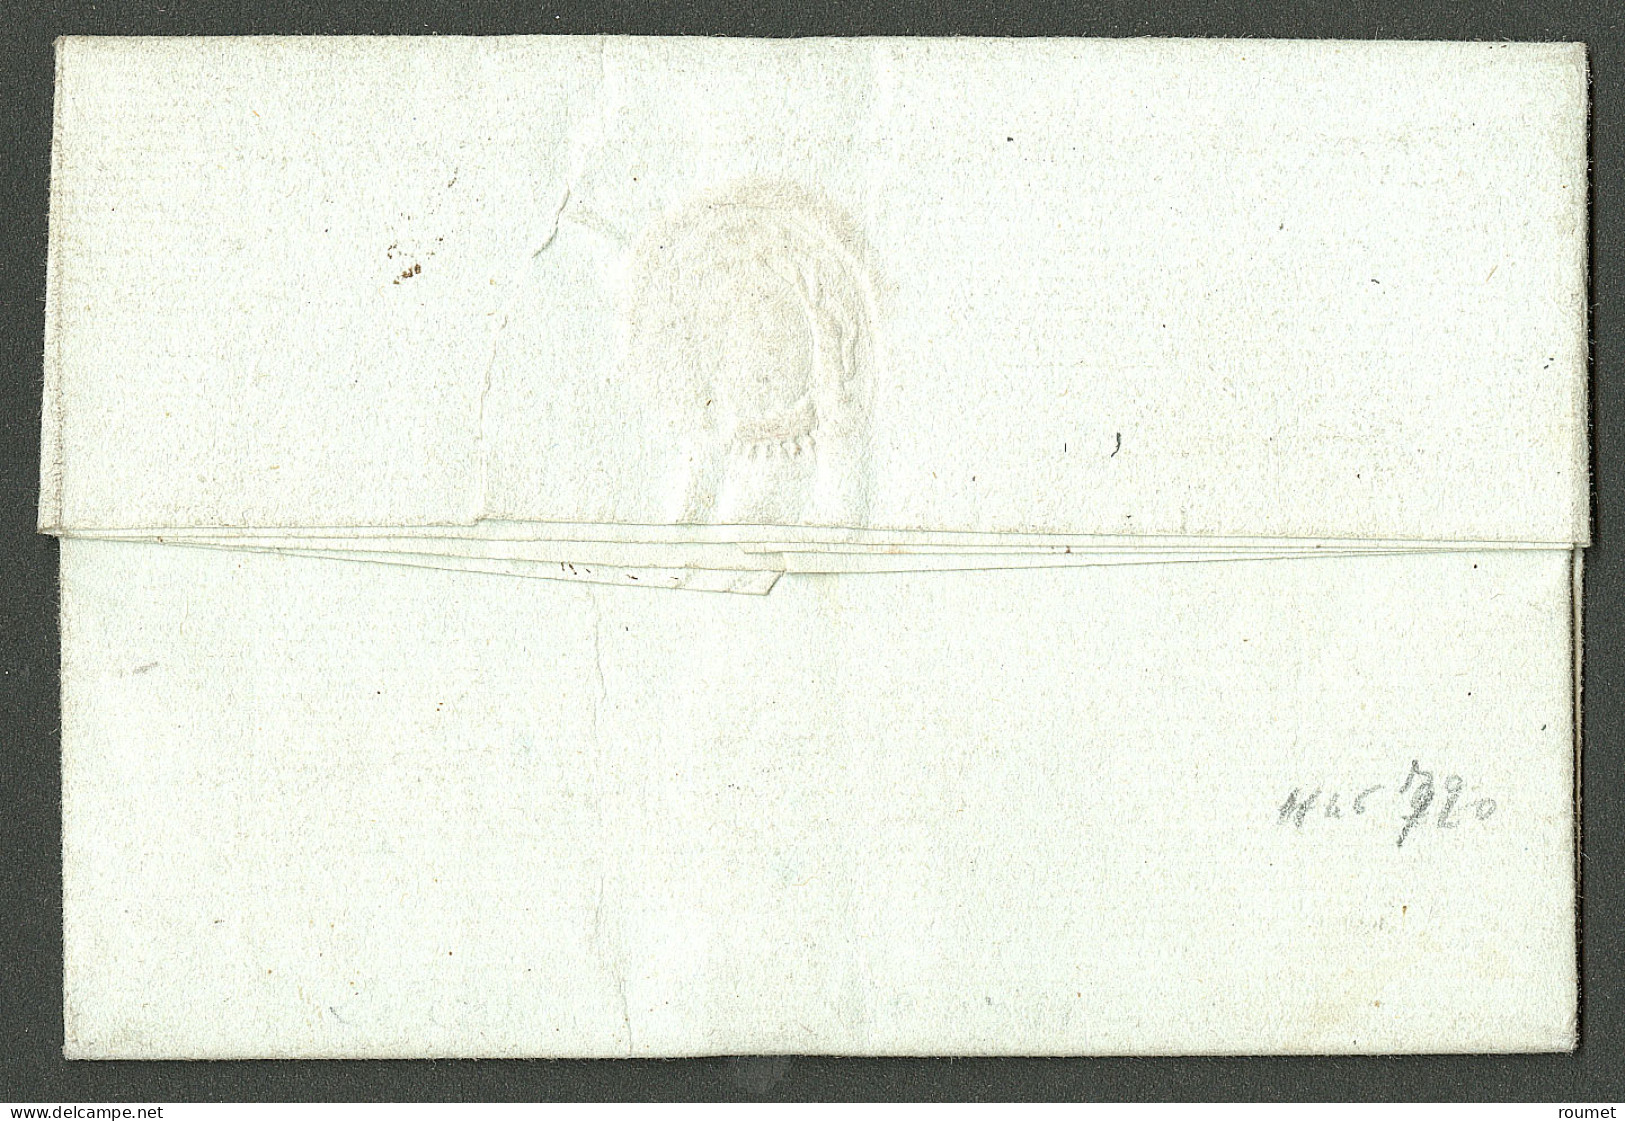 Lettre Cap * 28 VRVIL (avril) (Jamet N°15). Lettre Avec Texte Daté Du 28 Avril 1791 Pour Port Au Prince. TB. - R. - Haití